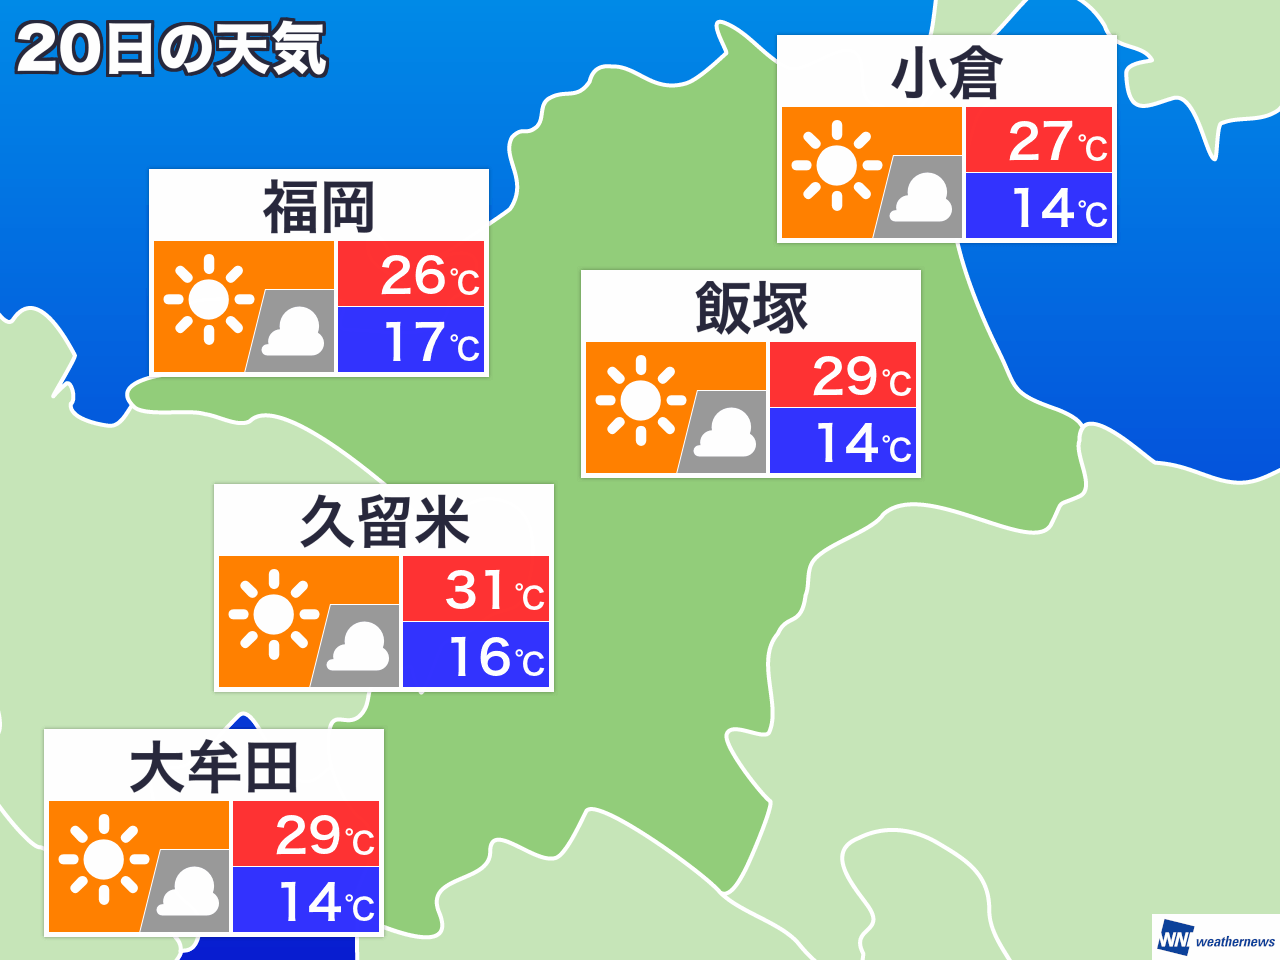 2月11日 火 福岡県の明日の天気 ウェザーニュース